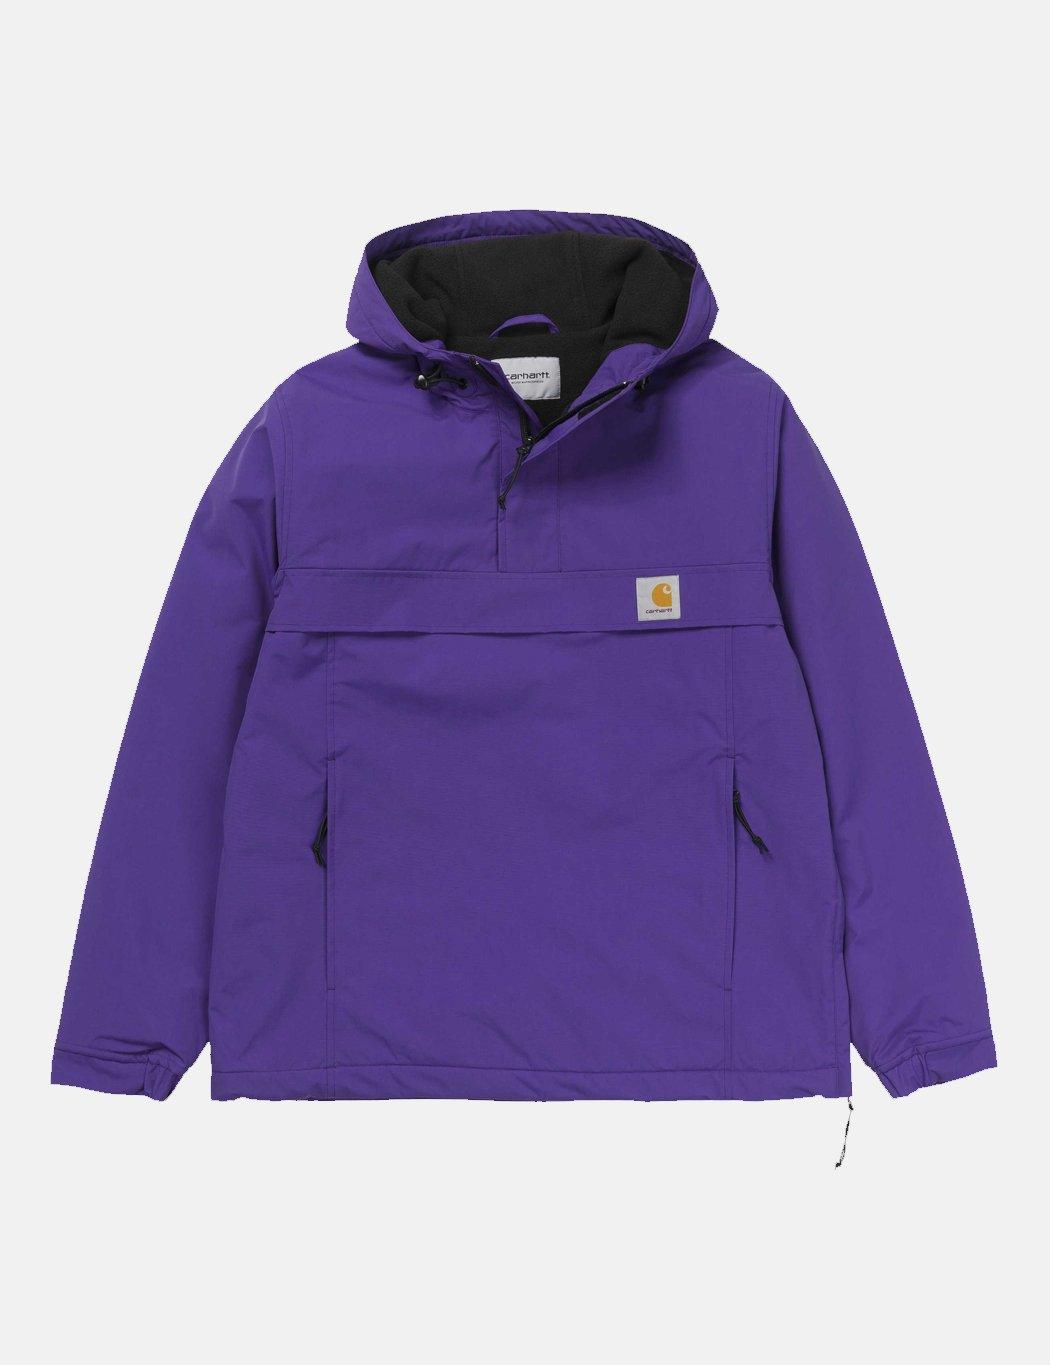 Carhartt Wip Nimbus Half-zip Jacket (fleece Lined) in Purple for Men - Lyst